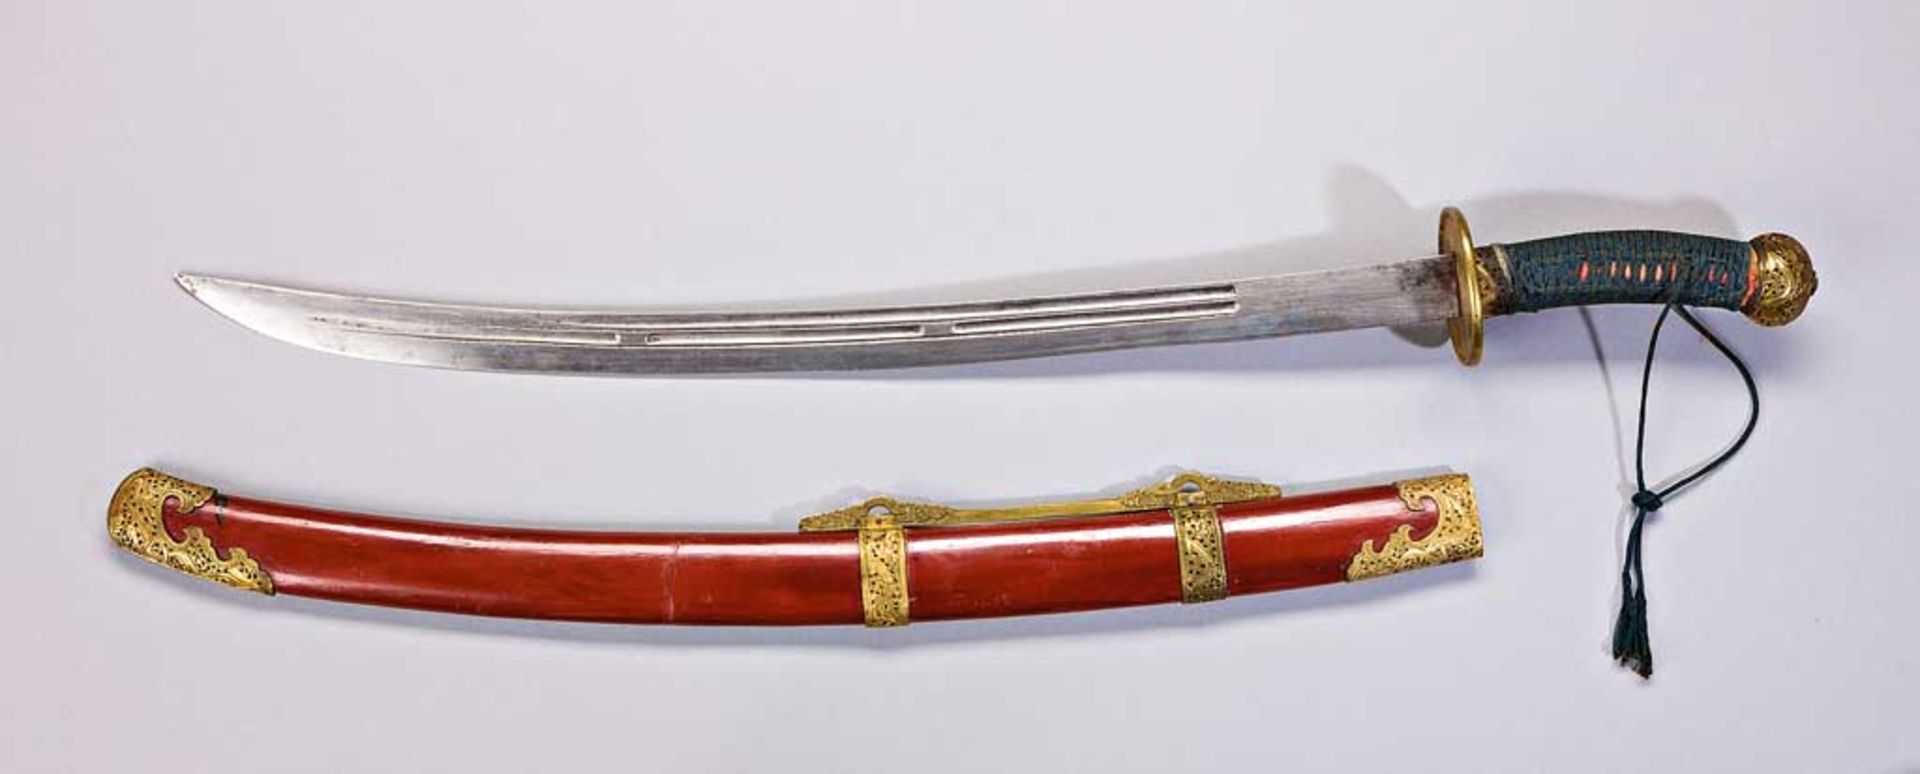 China-Schwert. Gleichförmig gebogene Rückenklinge mit Kehlungen. Stichblatt mit Ziergravuren. Leicht